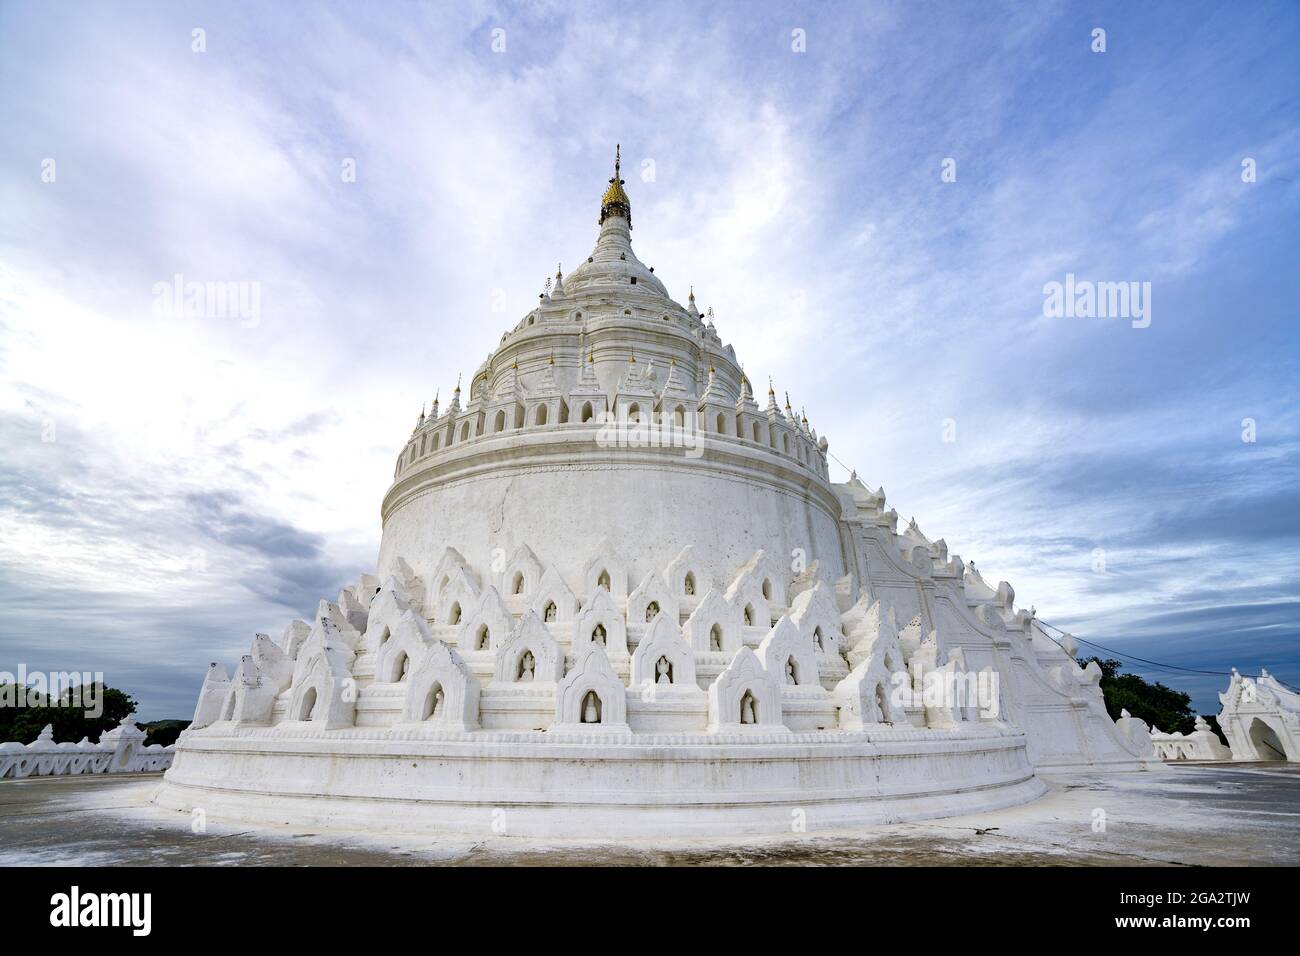 Die Hsinphyume Pagode (Mya Thein Tan Pagode) ist weiß gestrichen und basiert auf dem buddhistischen heiligen Berg des Berges Meru, der sich auf dem westlichen... Stockfoto